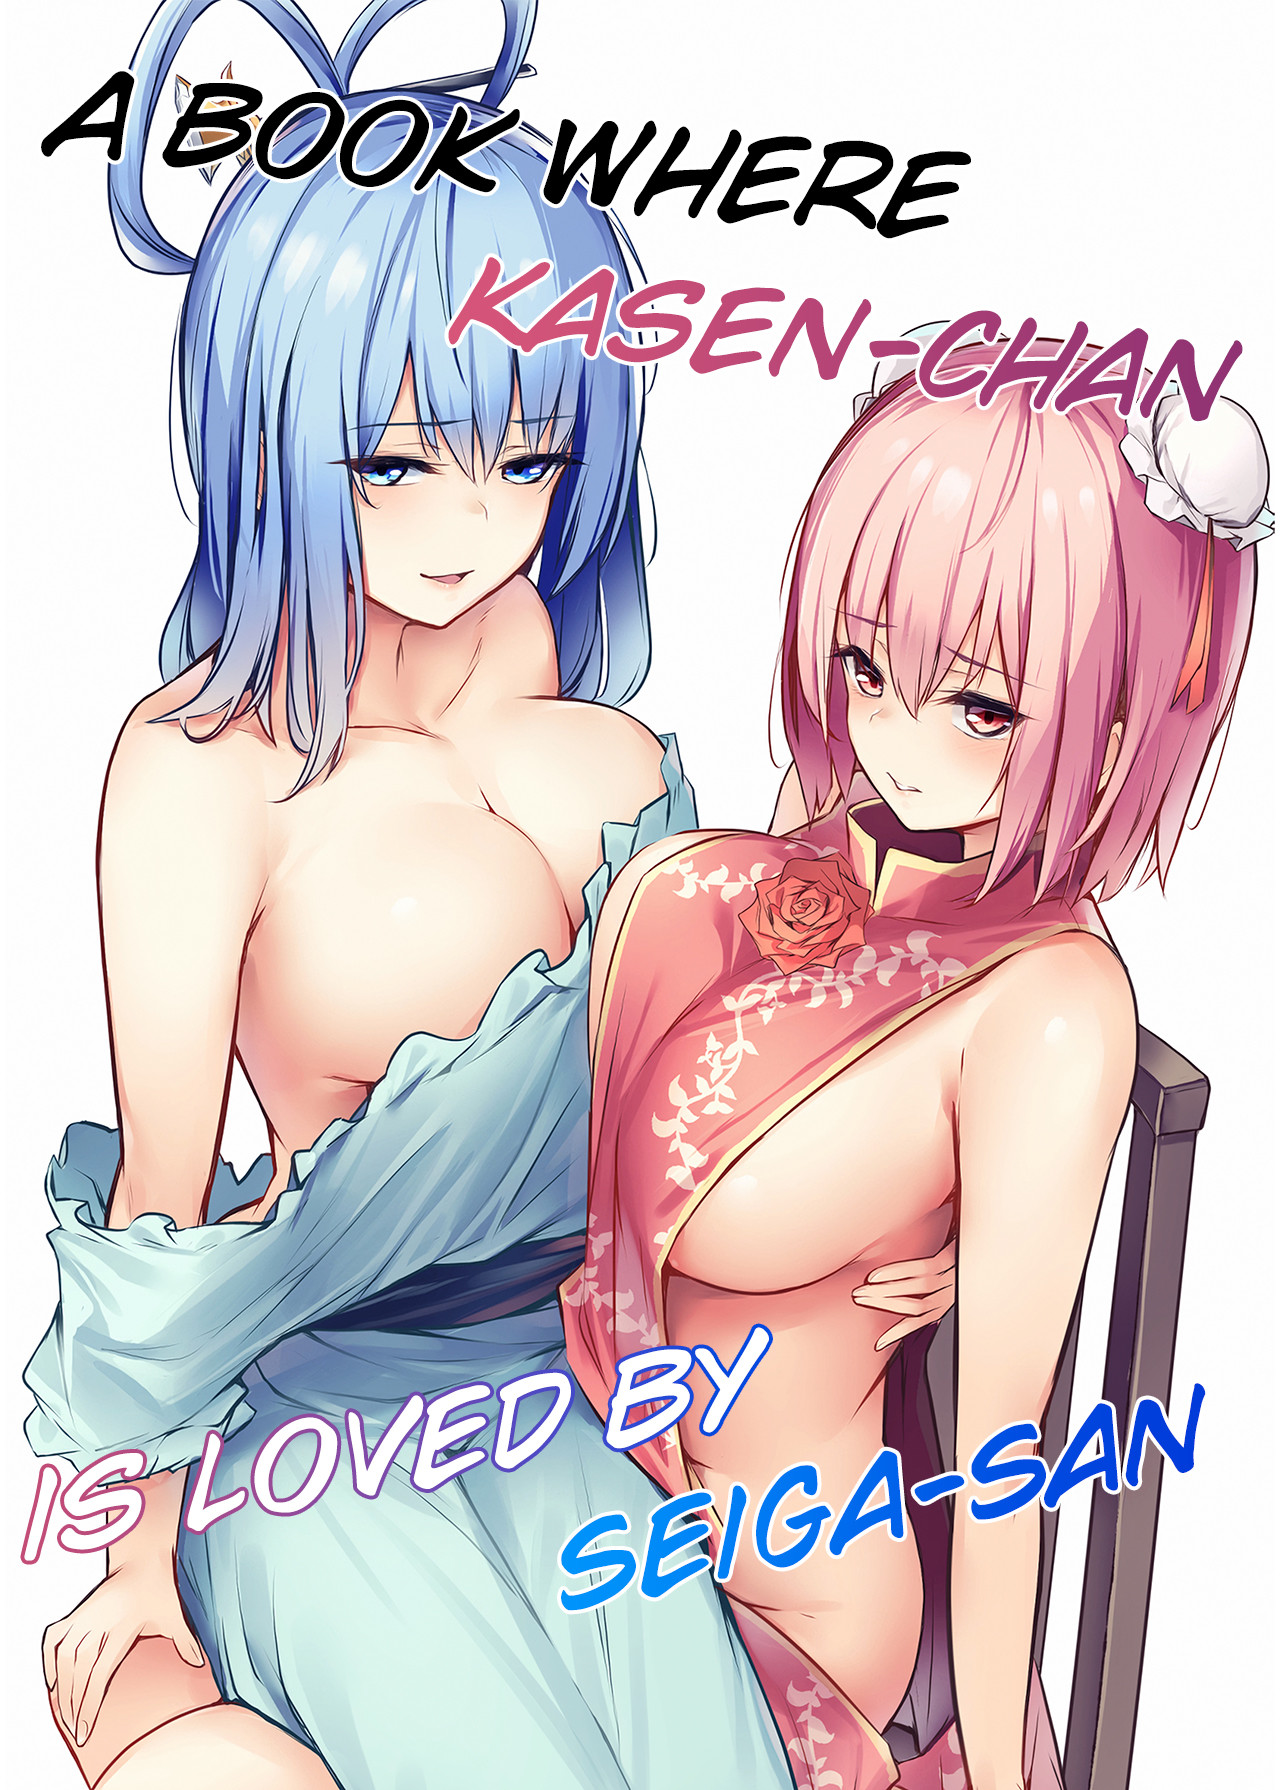 Hentai Manga Comic-A Book Where Kasen-chan Is Loved By Seiga-san-Read-1